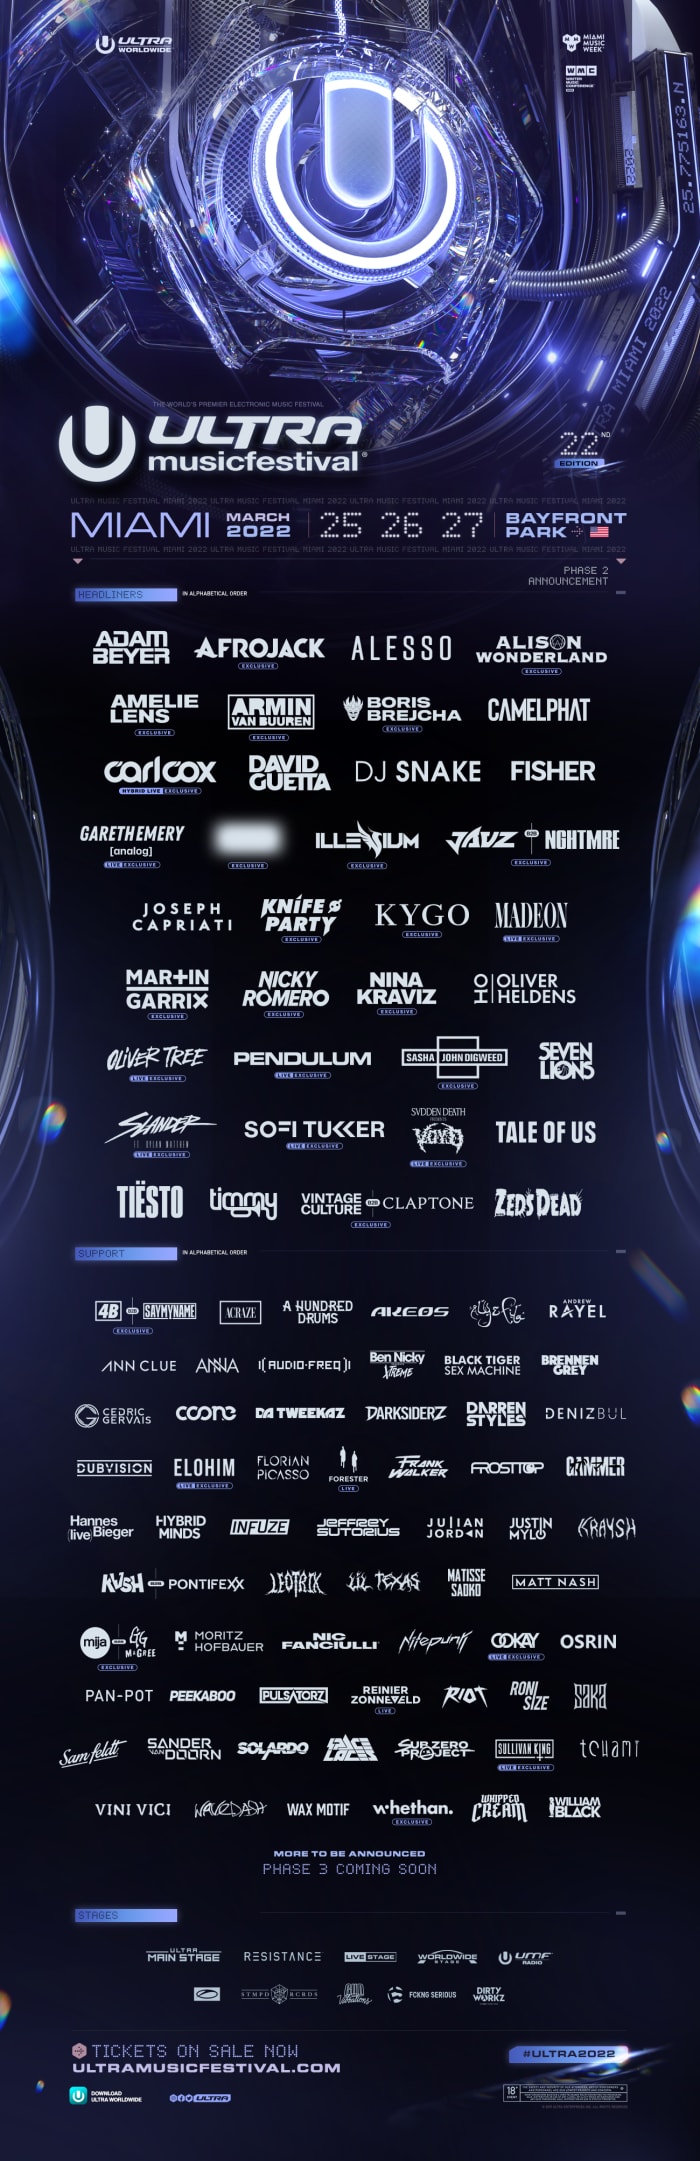 Ultra Music Festival 2022 lineup featuring DJ Snake, Armin van Buuren, Kygo, Martin Garrix, and more.